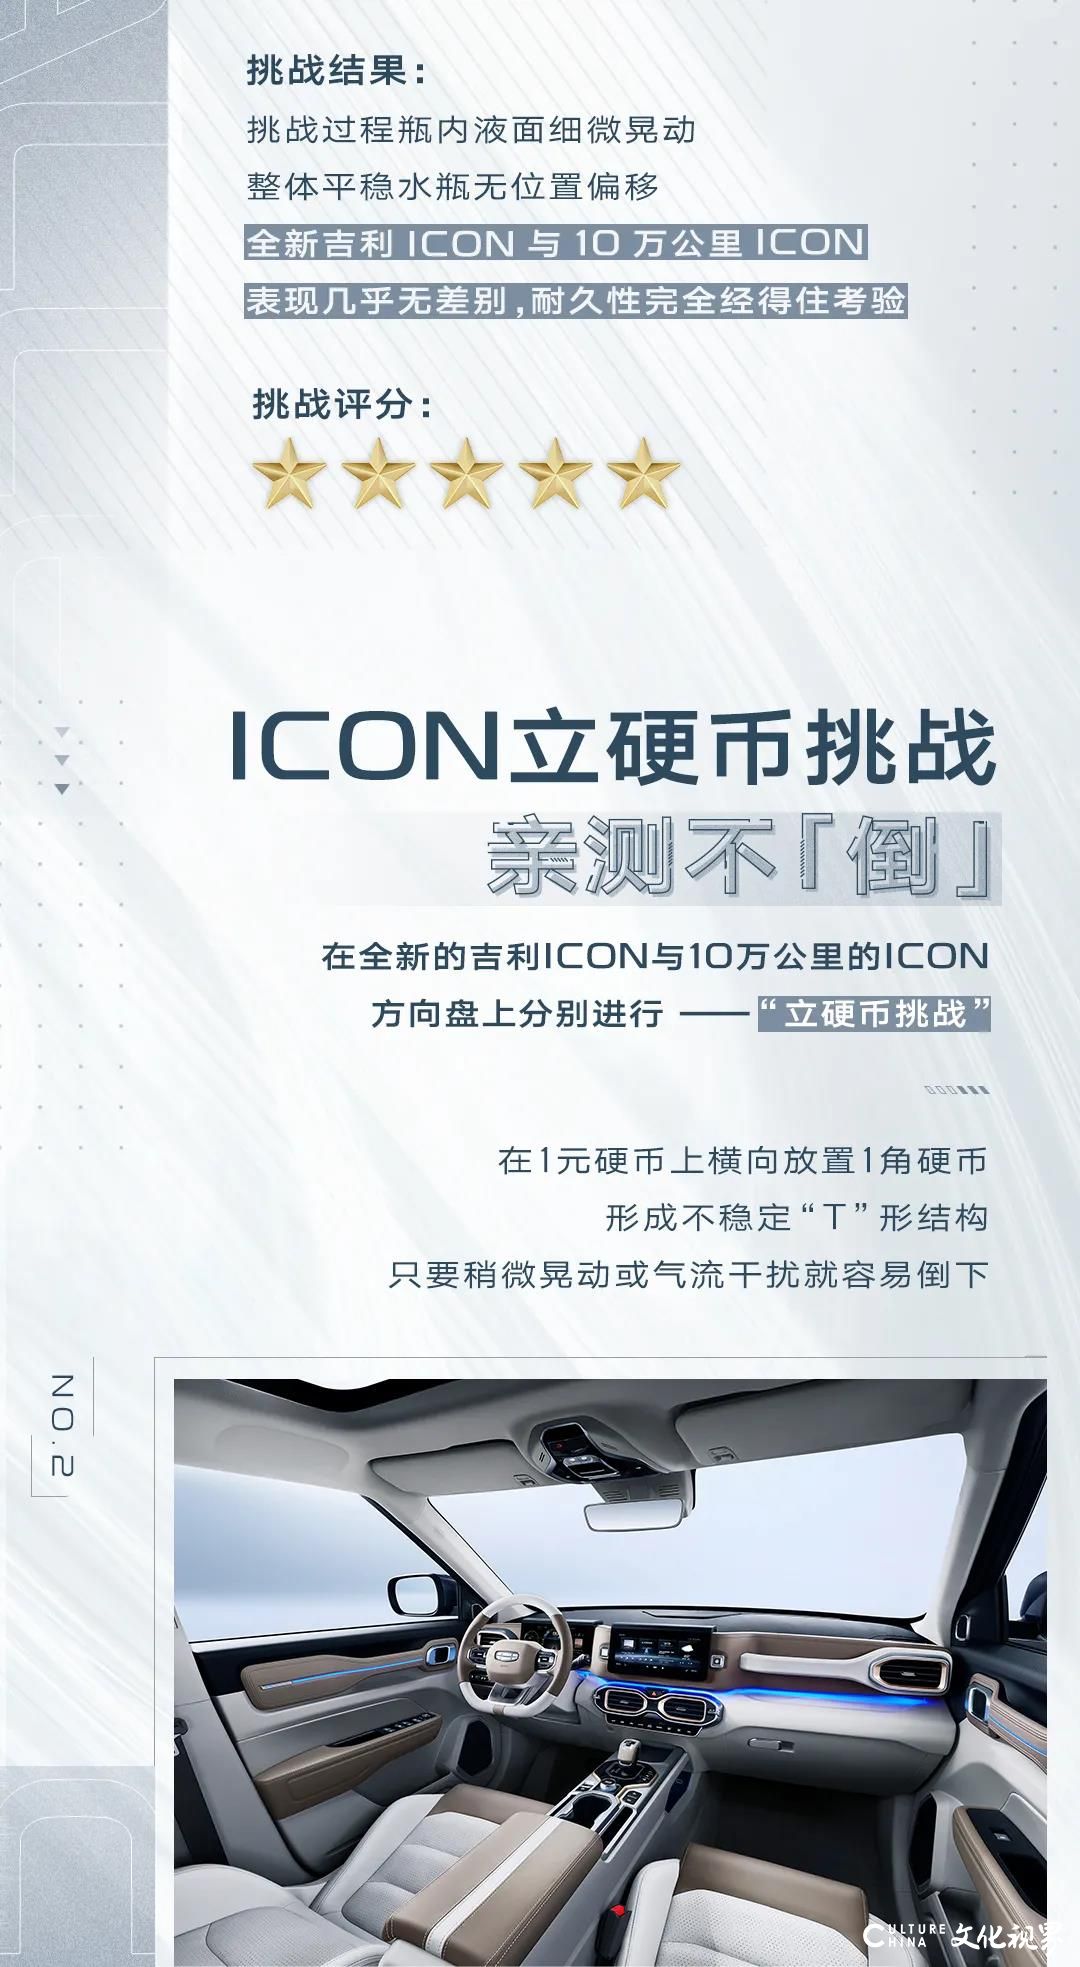 吉利ICON发起十万公里“发动机耐久性”大挑战，验证ICON“平顺性”与“耐久性”的技术自信